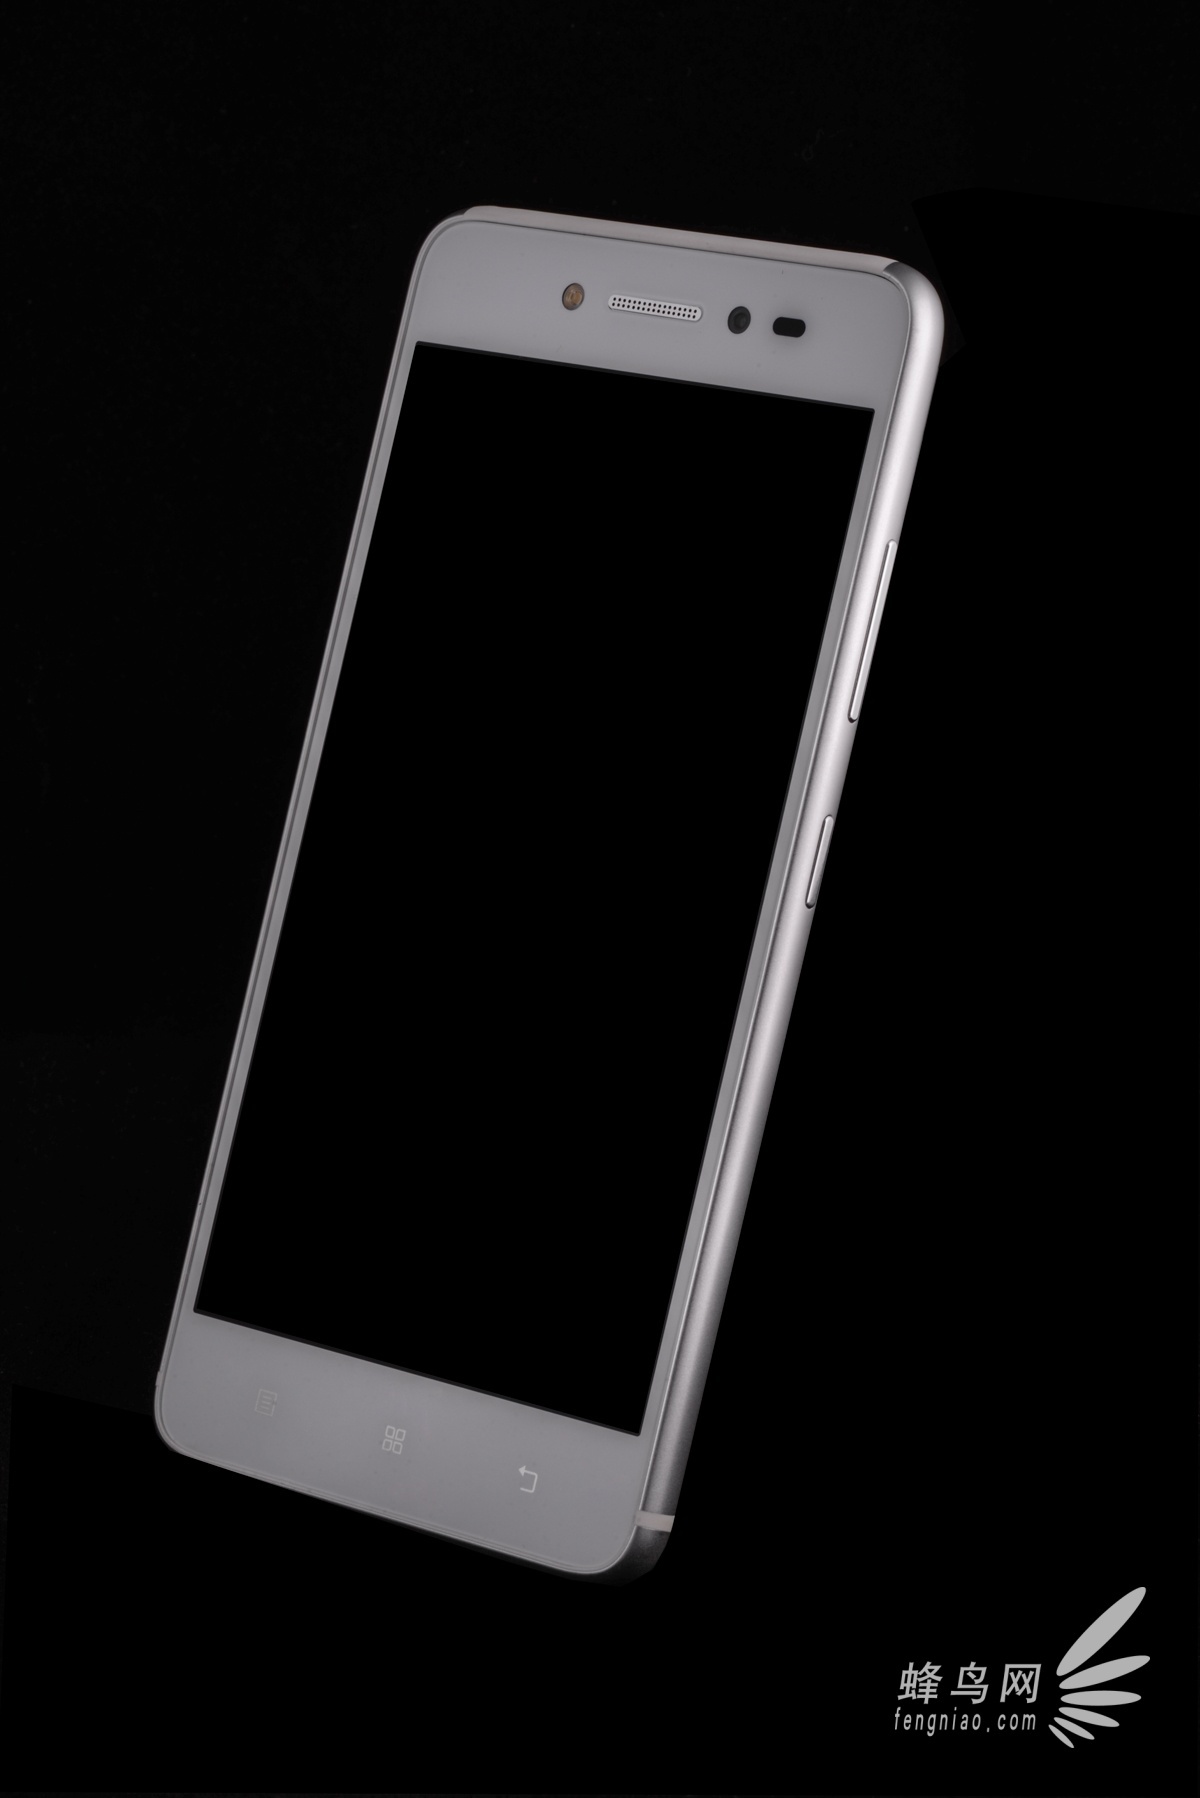 外观引争议 联想笋尖S90自拍手机图赏